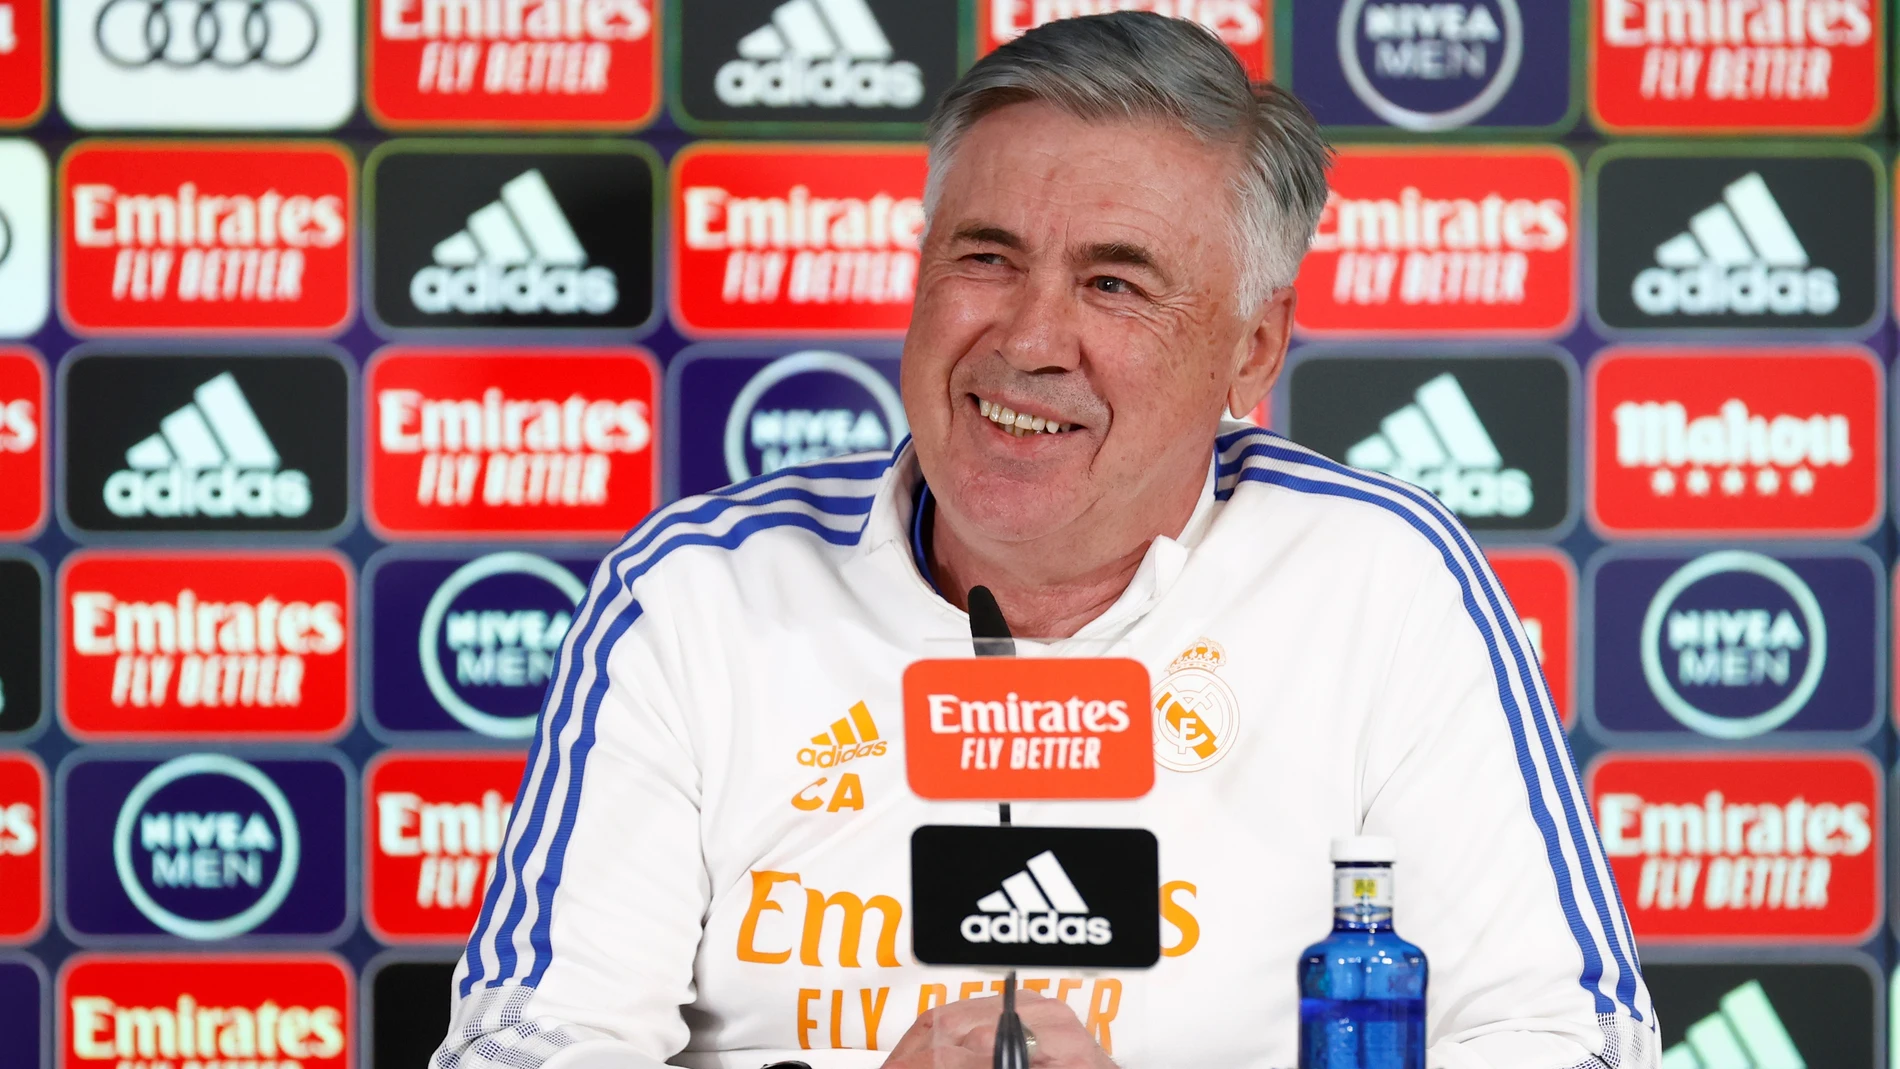 El entrenador italiano del Real Madrid Carlo Ancelotti durante una conferencia de Prensa